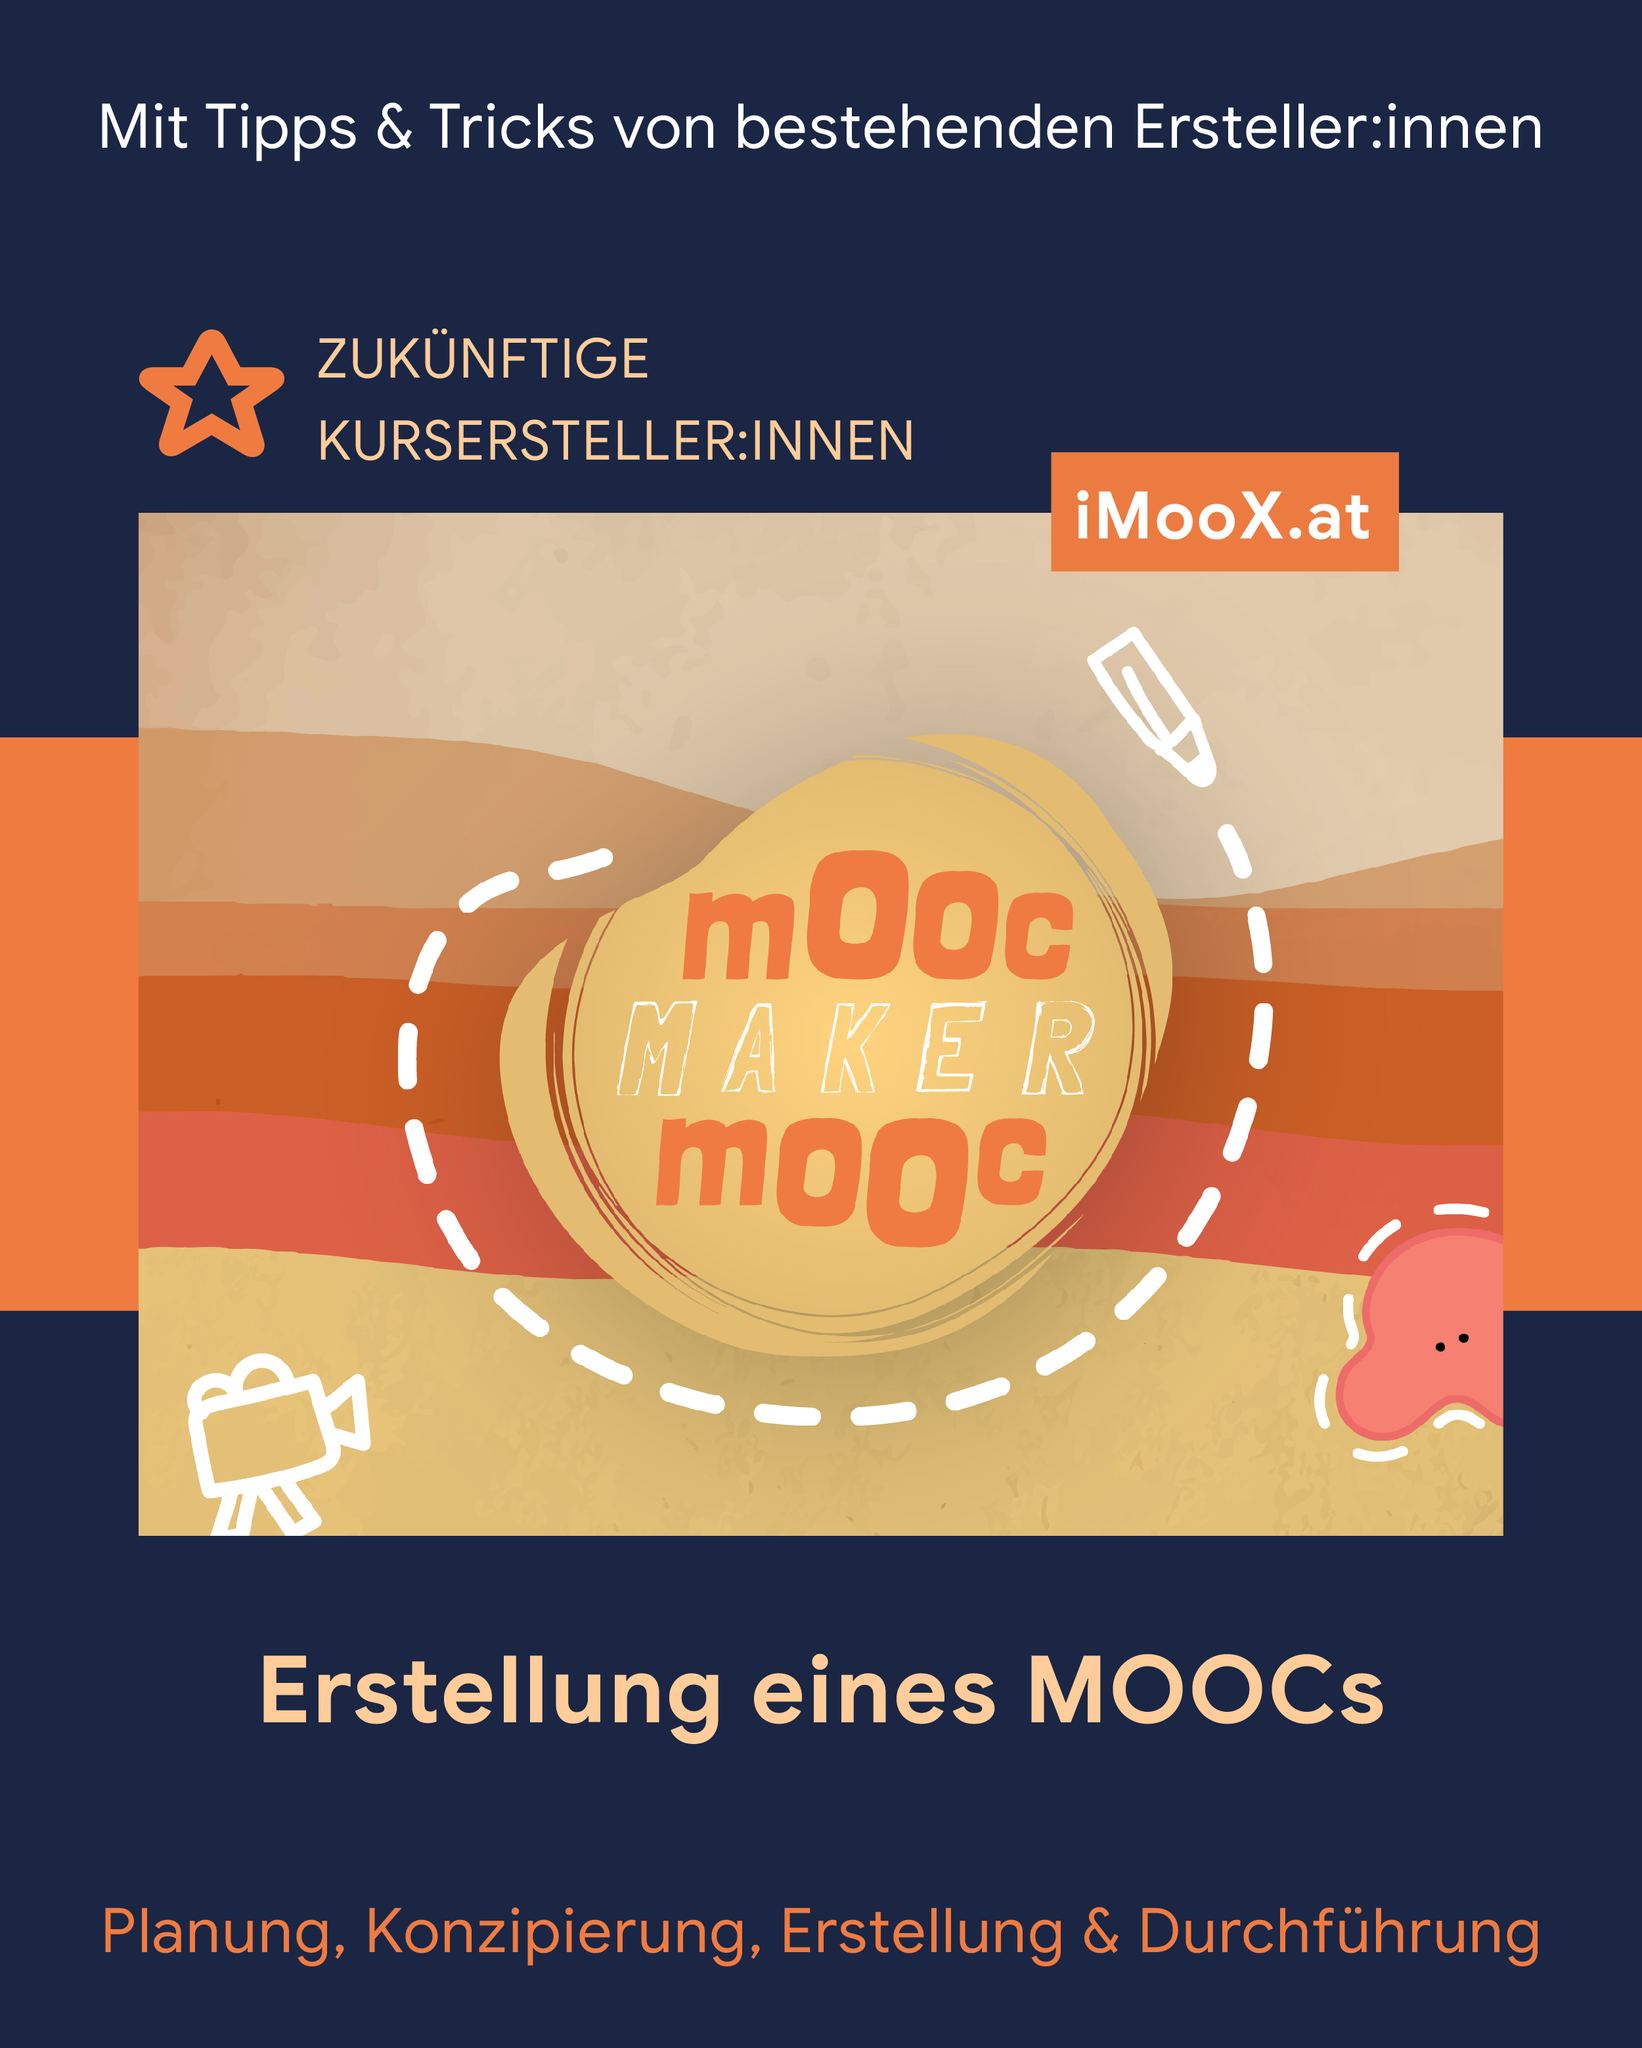 📢 Interessiert daran, zu erfahren, was wirklich hinter der Erstellung eines MOOCs ...